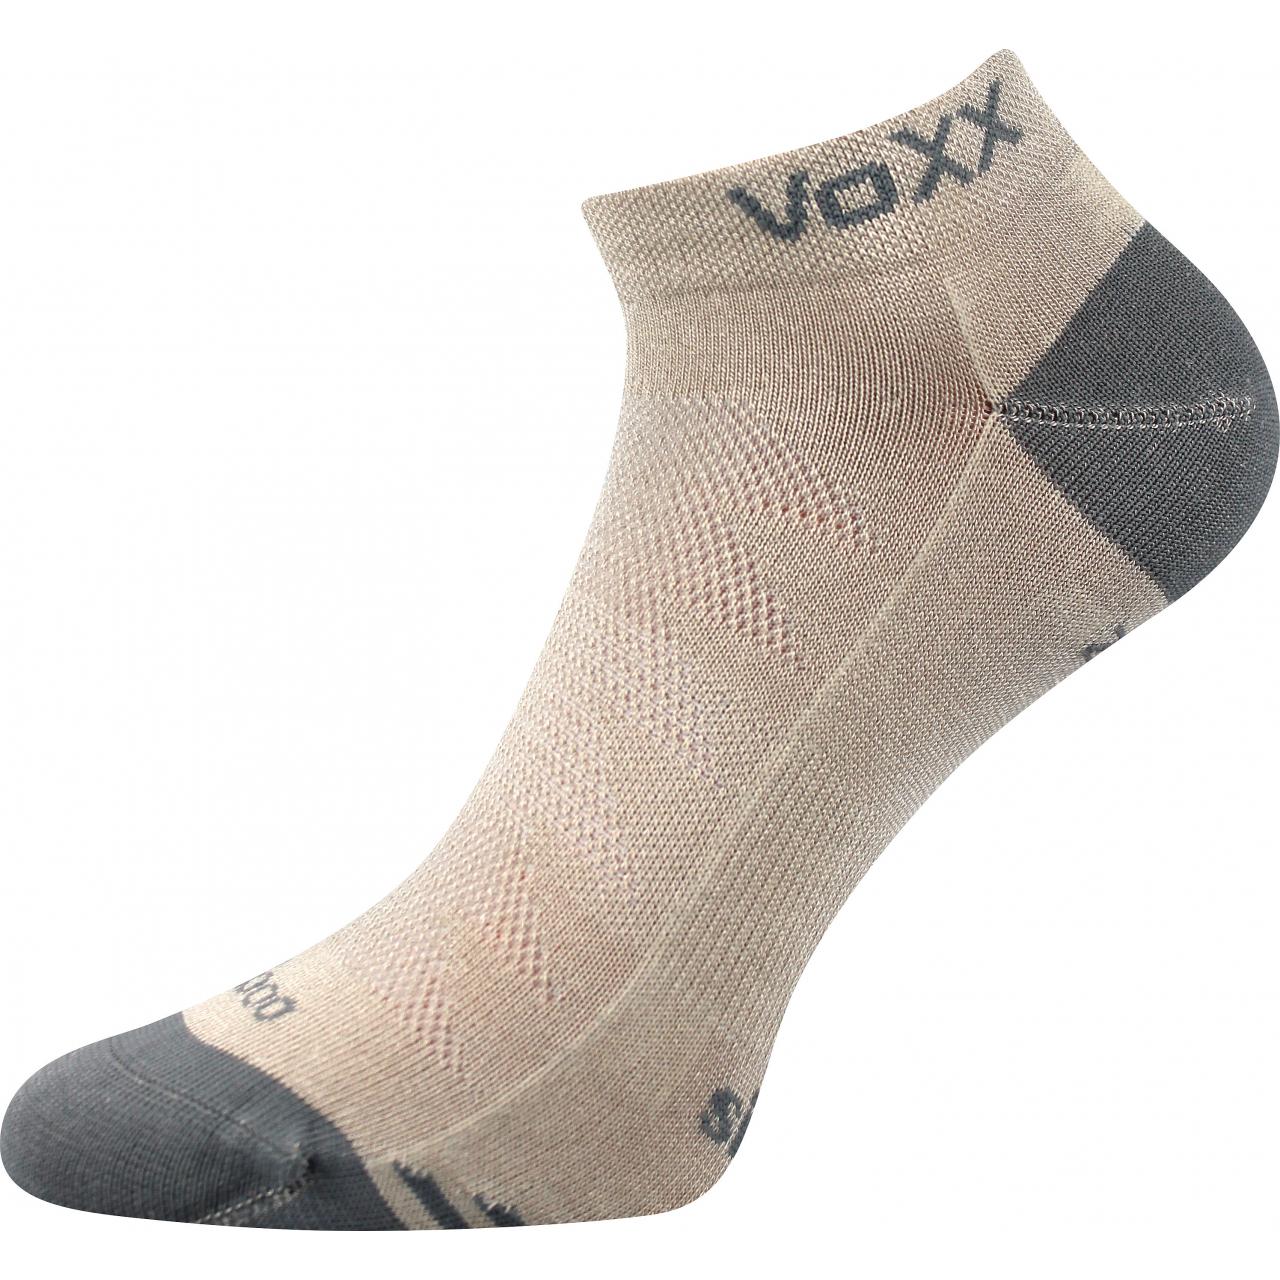 Ponožky sportovní unisex Voxx Bojar - béžové-šedé, 39-42